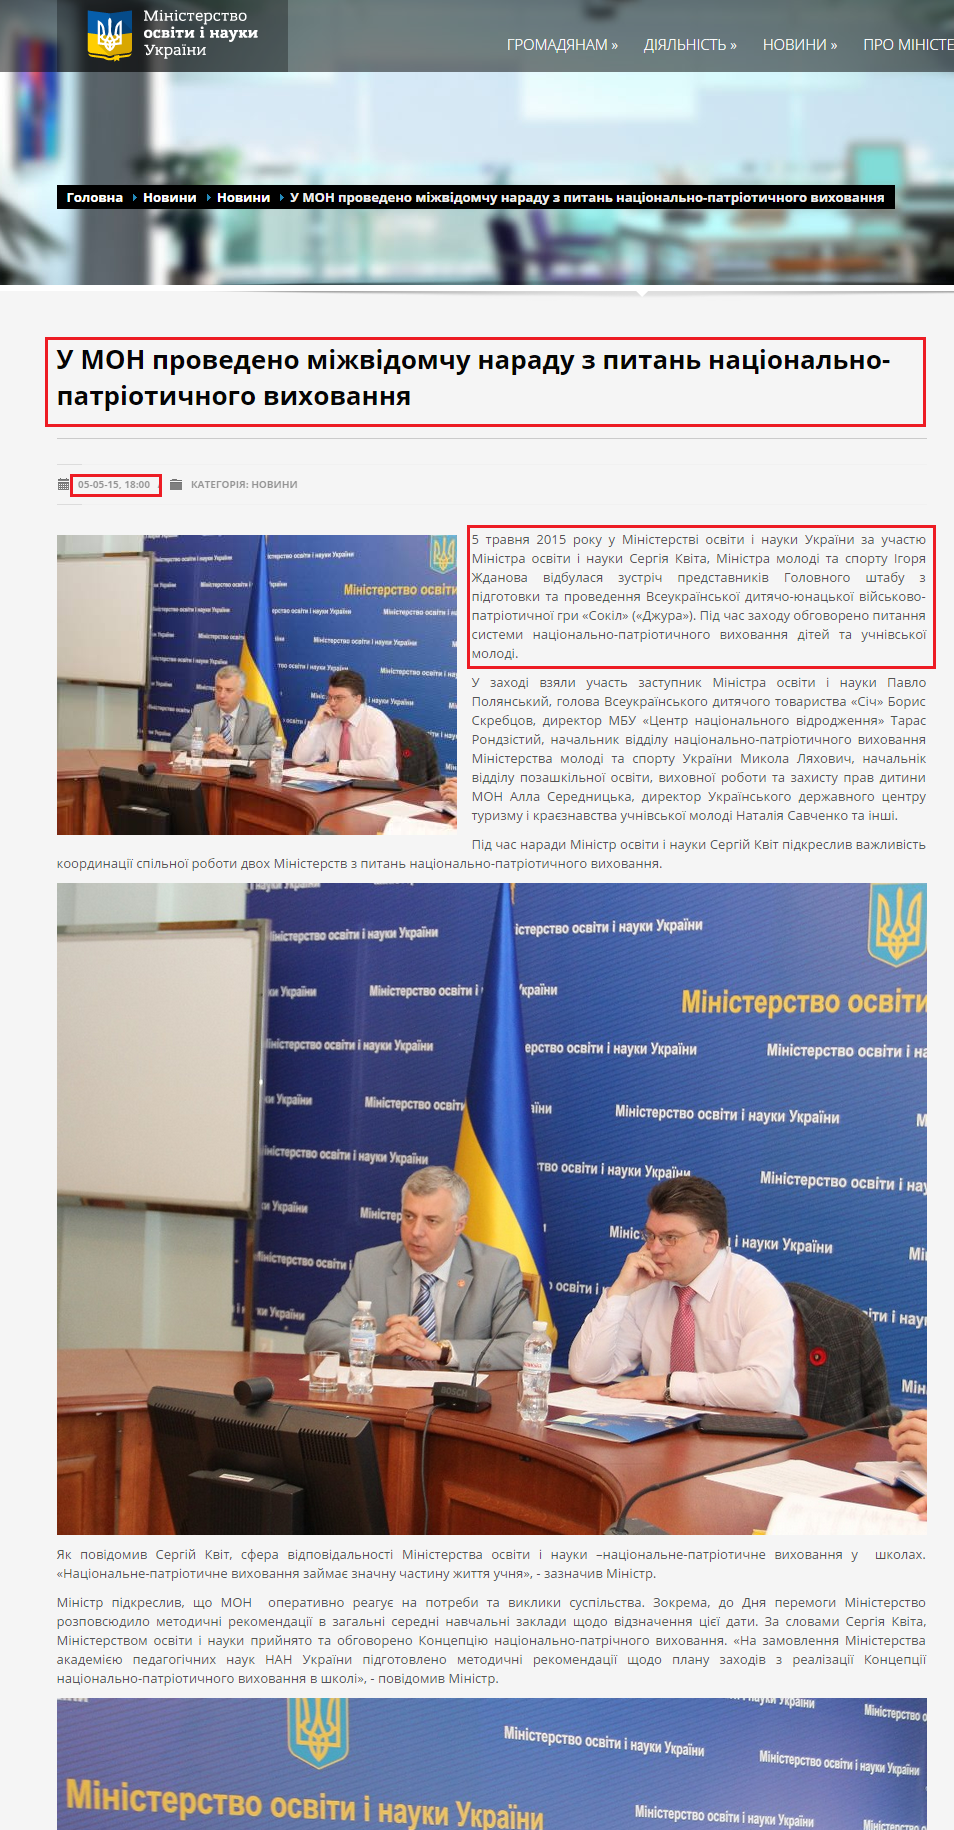 http://www.mon.gov.ua/usi-novivni/novini/2015/04/28/u-mon-provedeno-mizhvidomchu-naradu-z-pitan-naczionalno-patriotichnogo-vixovannya/